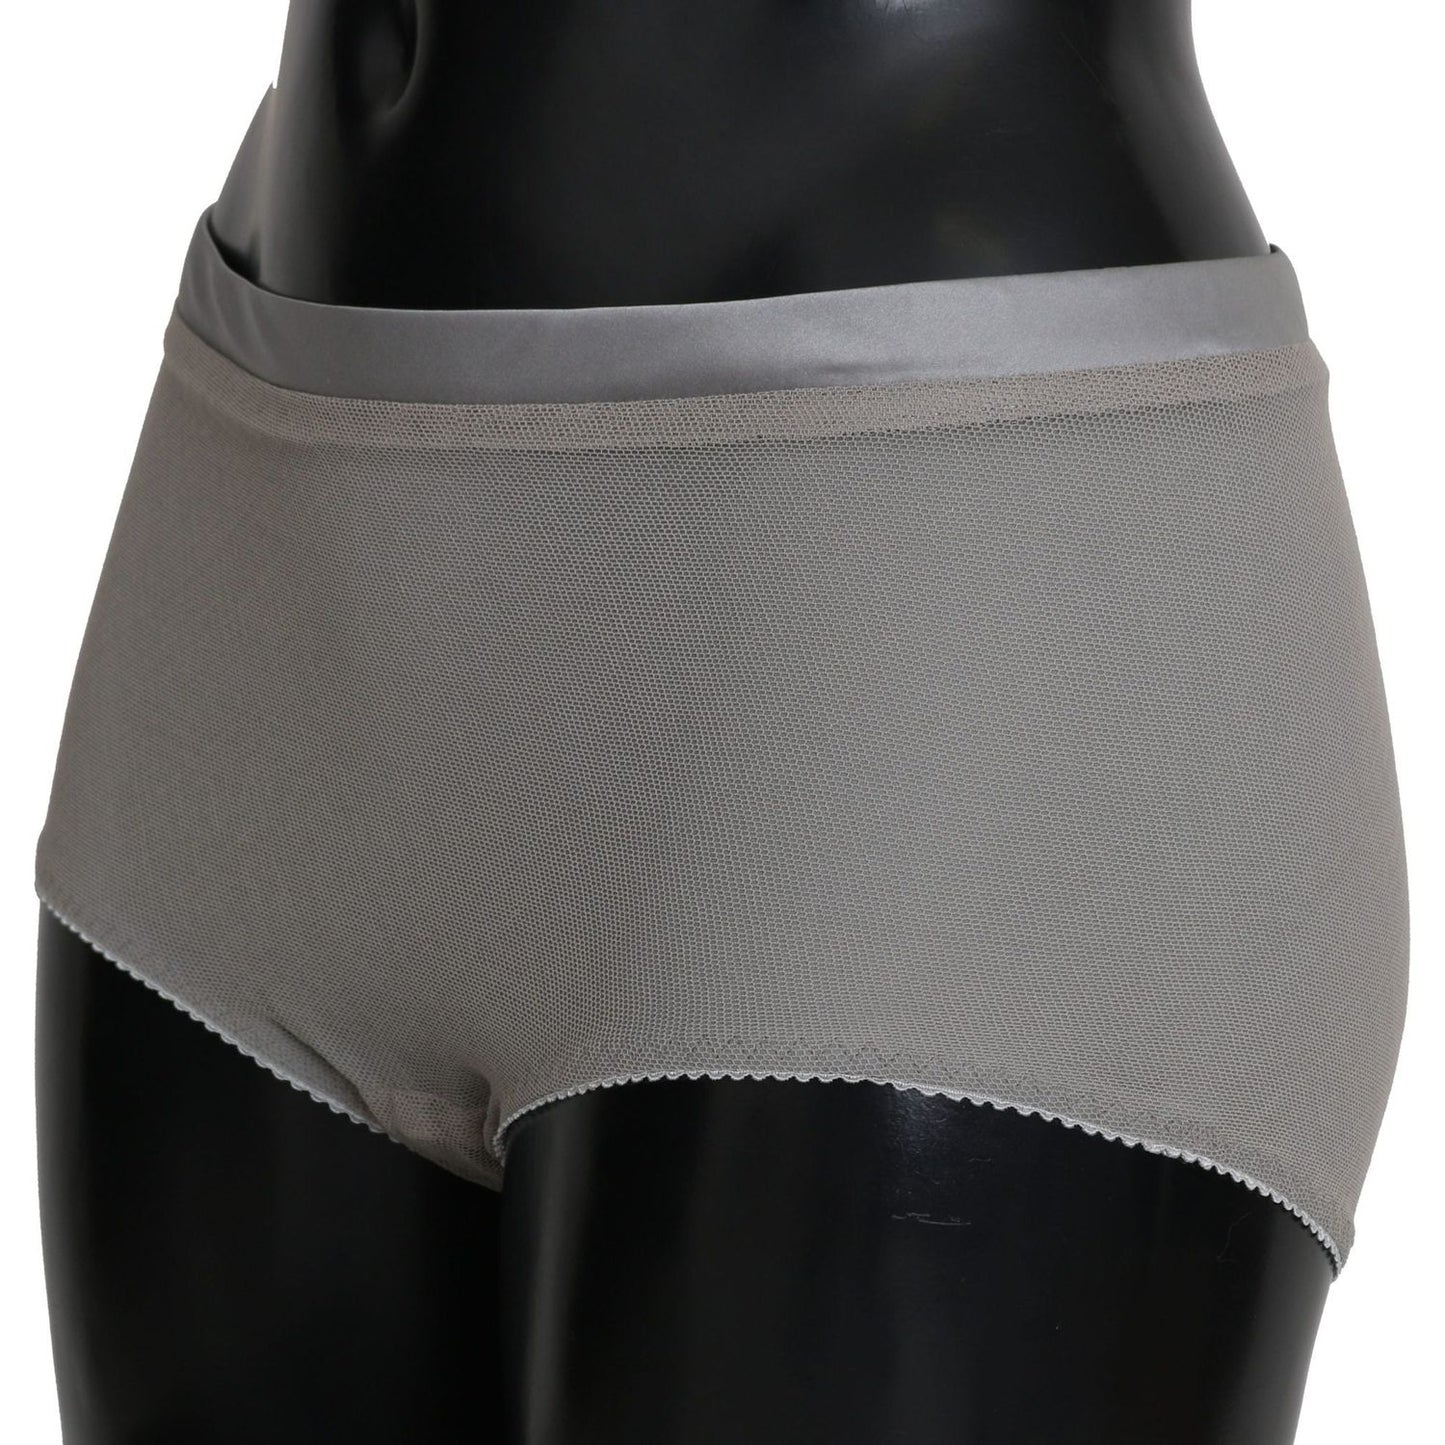 Dolce & Gabbana Shimmering Silver Stretch Cotton Underwear underwear-silver-with-net-silk-bottoms IMG_3700-scaled-64f5275c-2bd.jpg